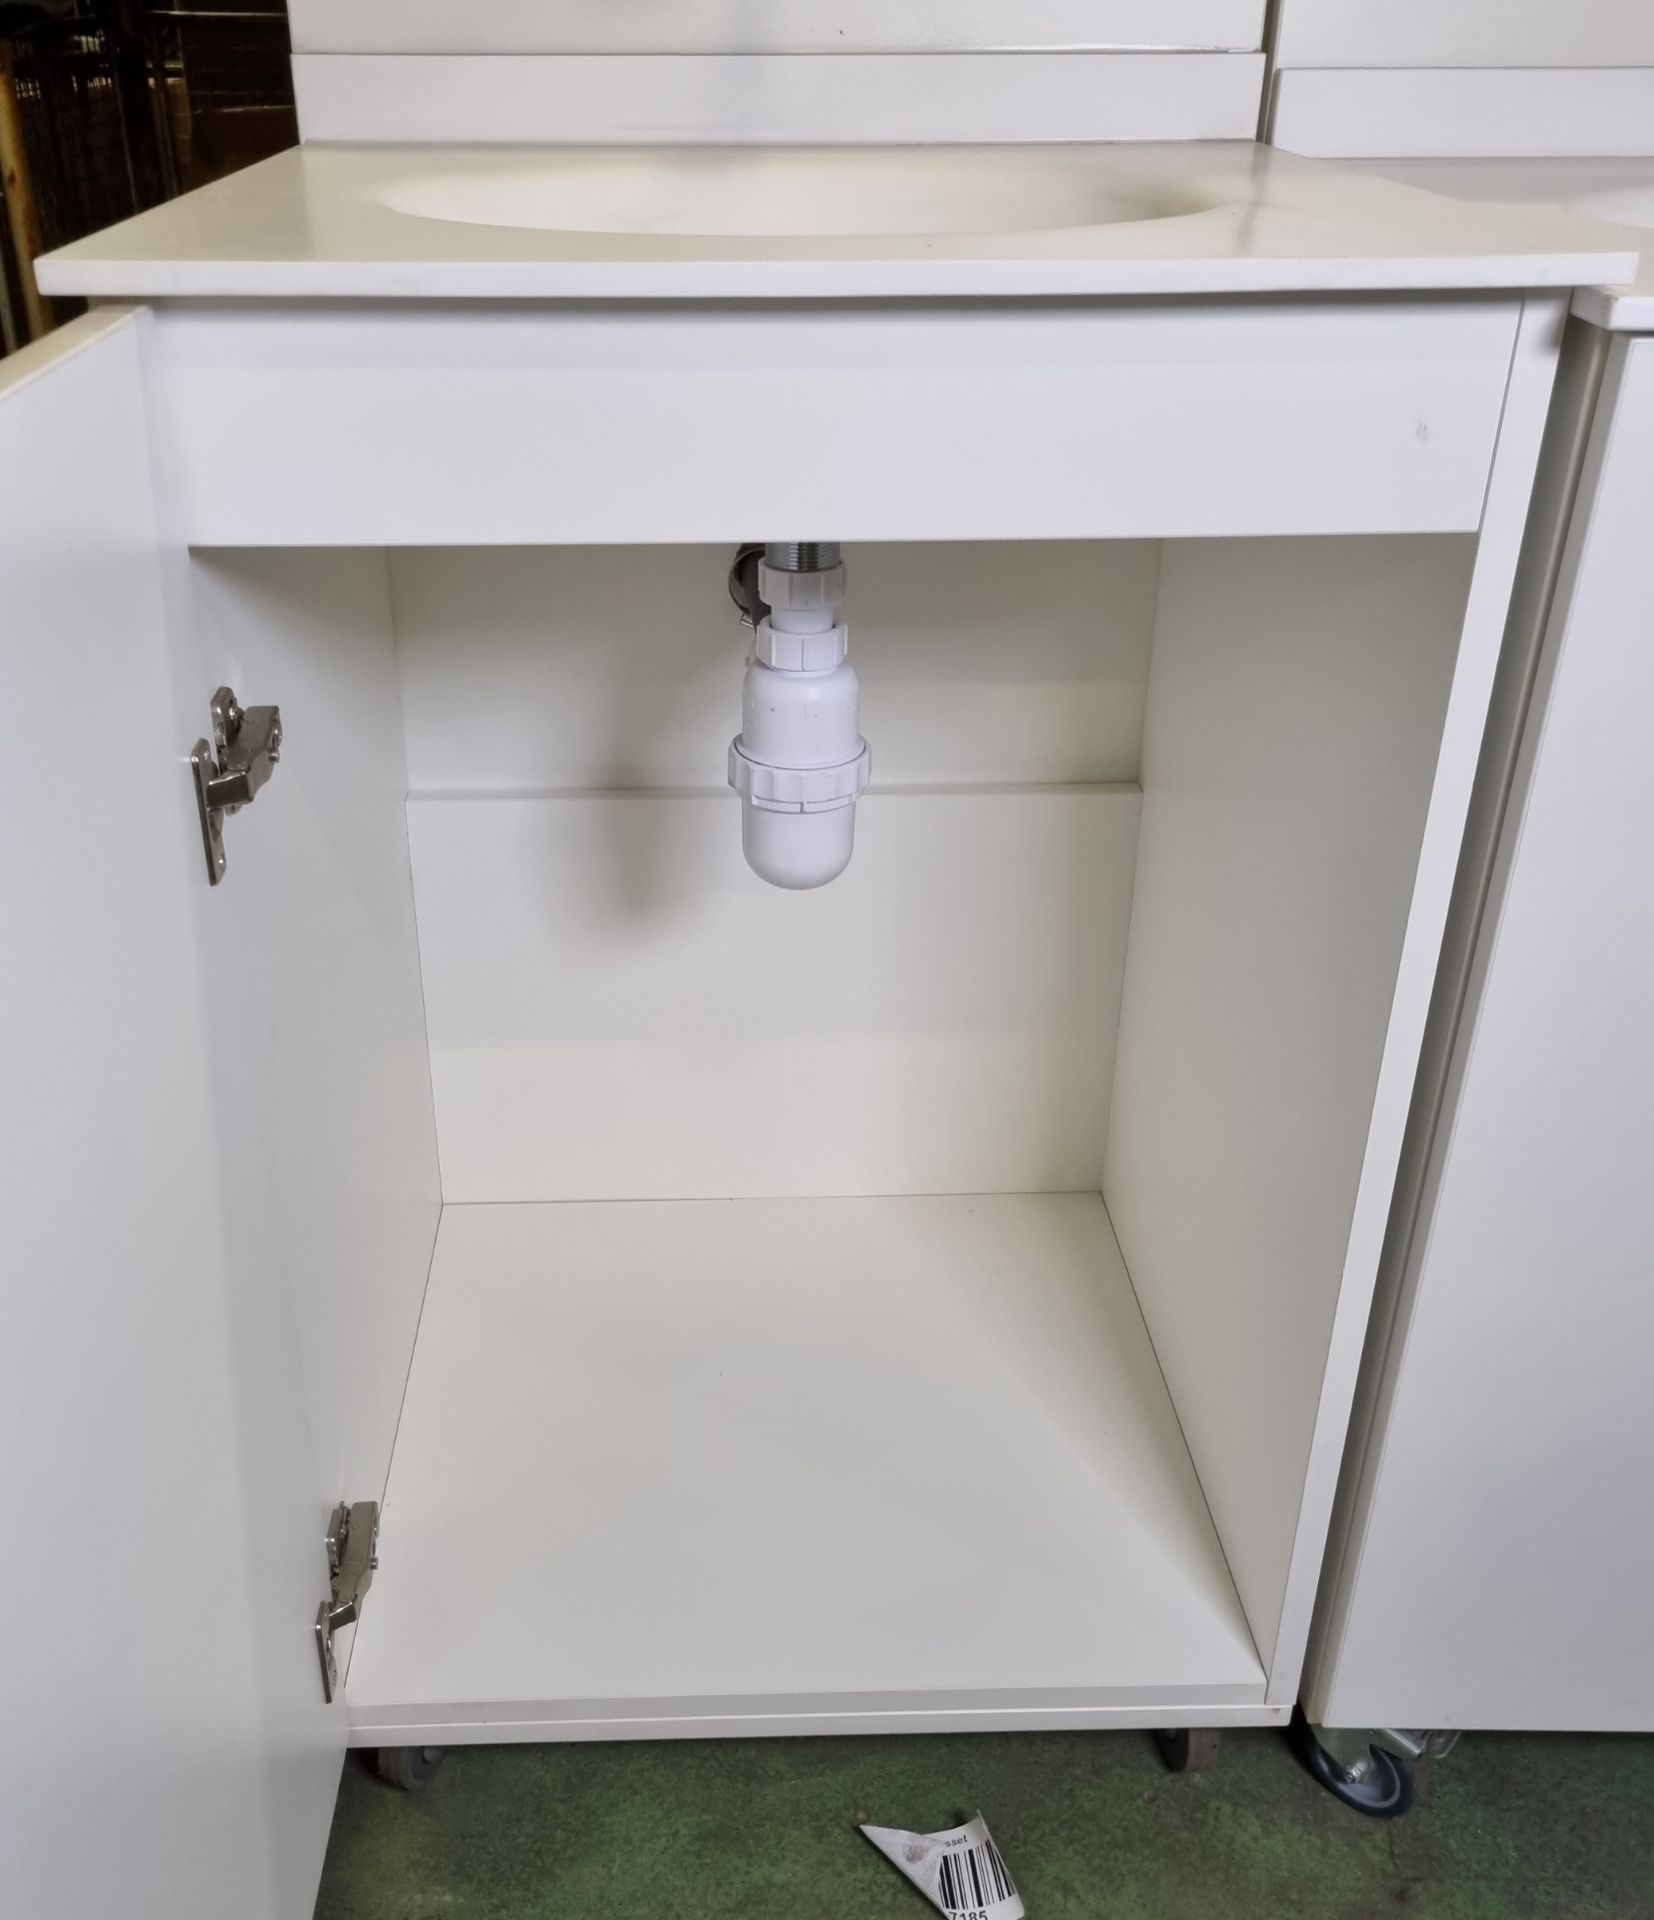 Portable hand wash station with under counter storage & Armitage Shanks mixer tap L 600 x W 680 - Bild 4 aus 4